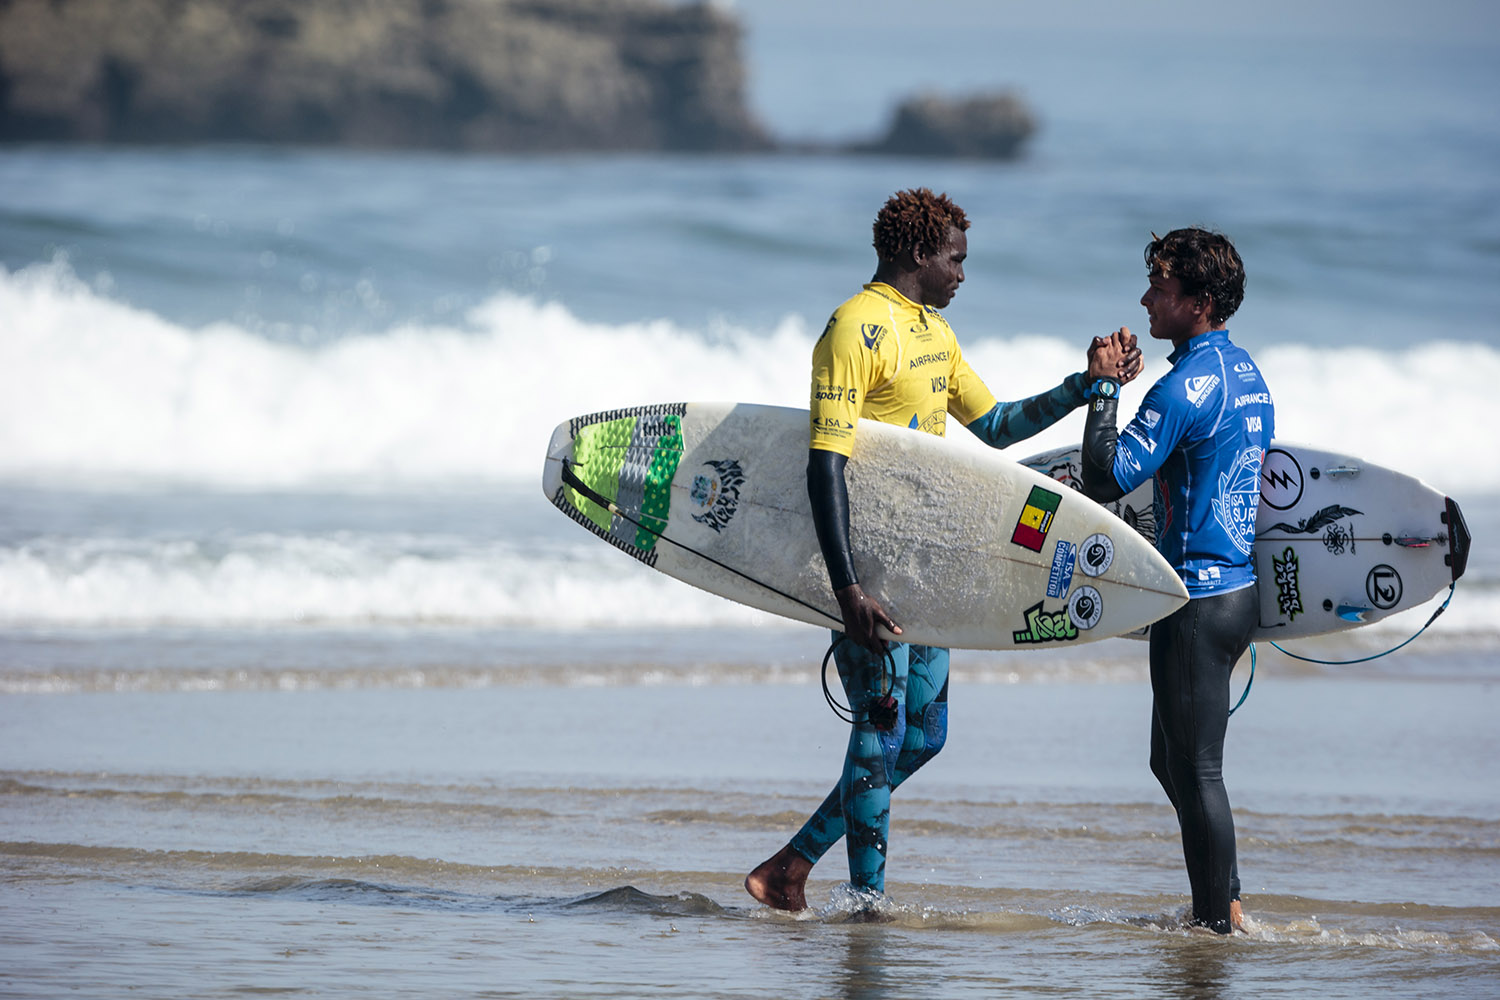 Surfing Championship Updates